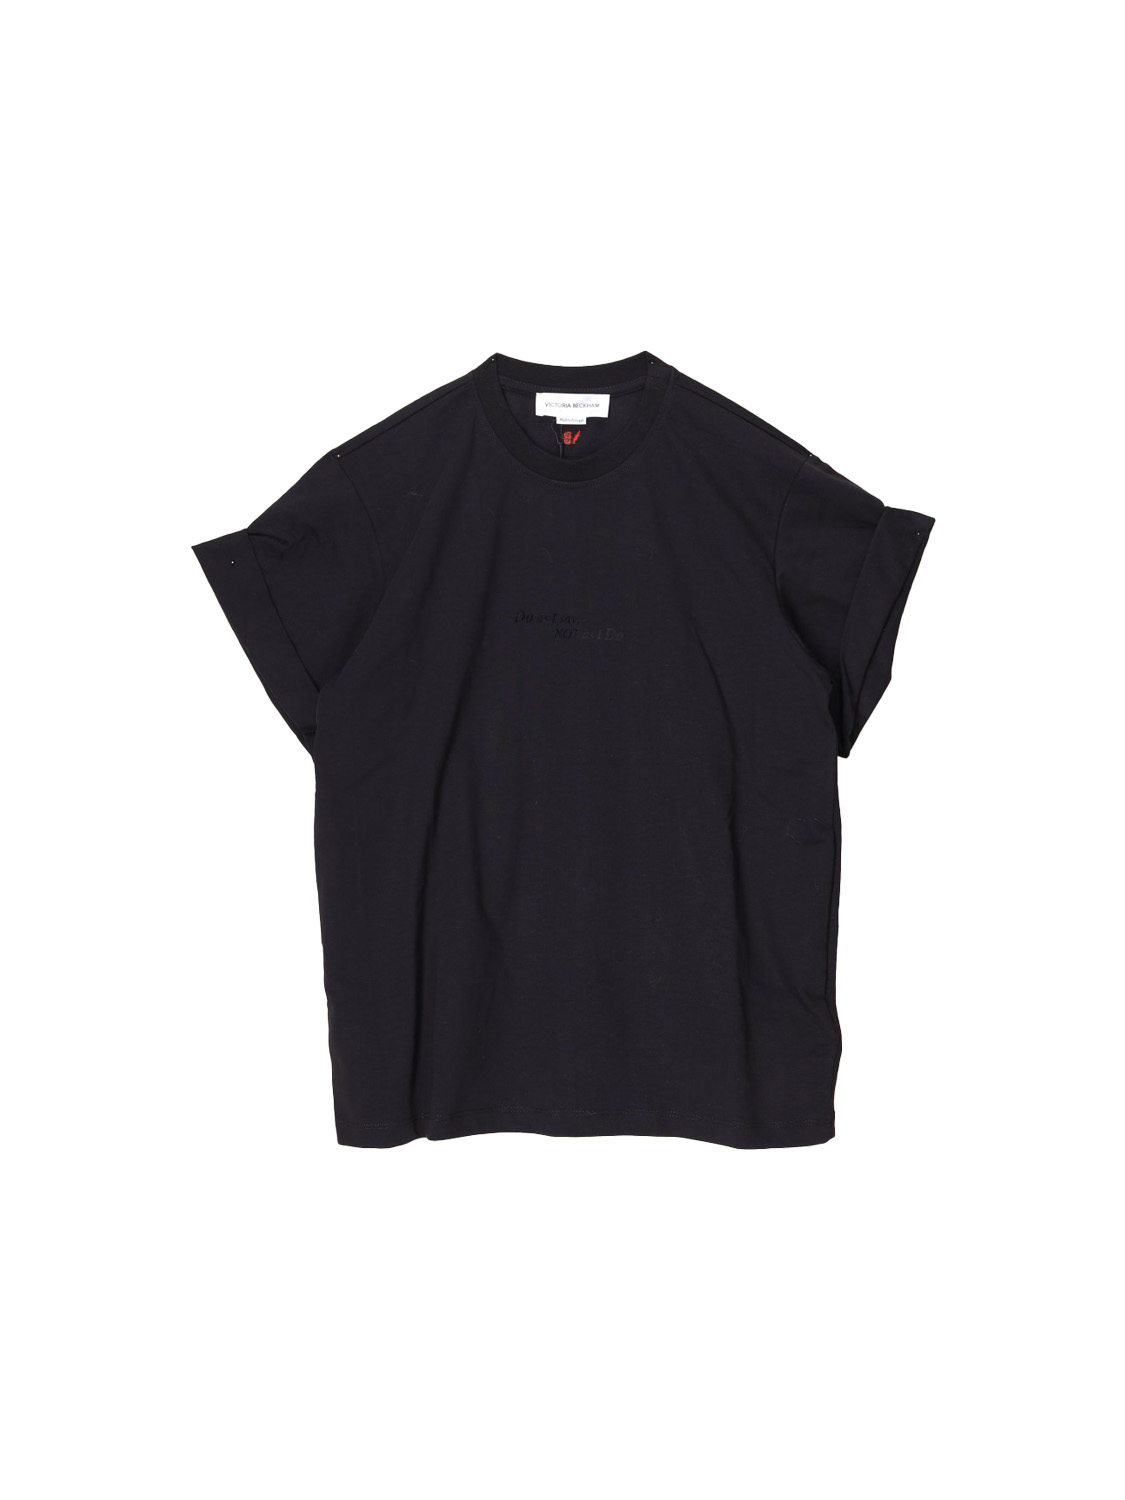 Victoria Beckham Slogan – Oversized Baumwoll T-Shirt   schwarz XS